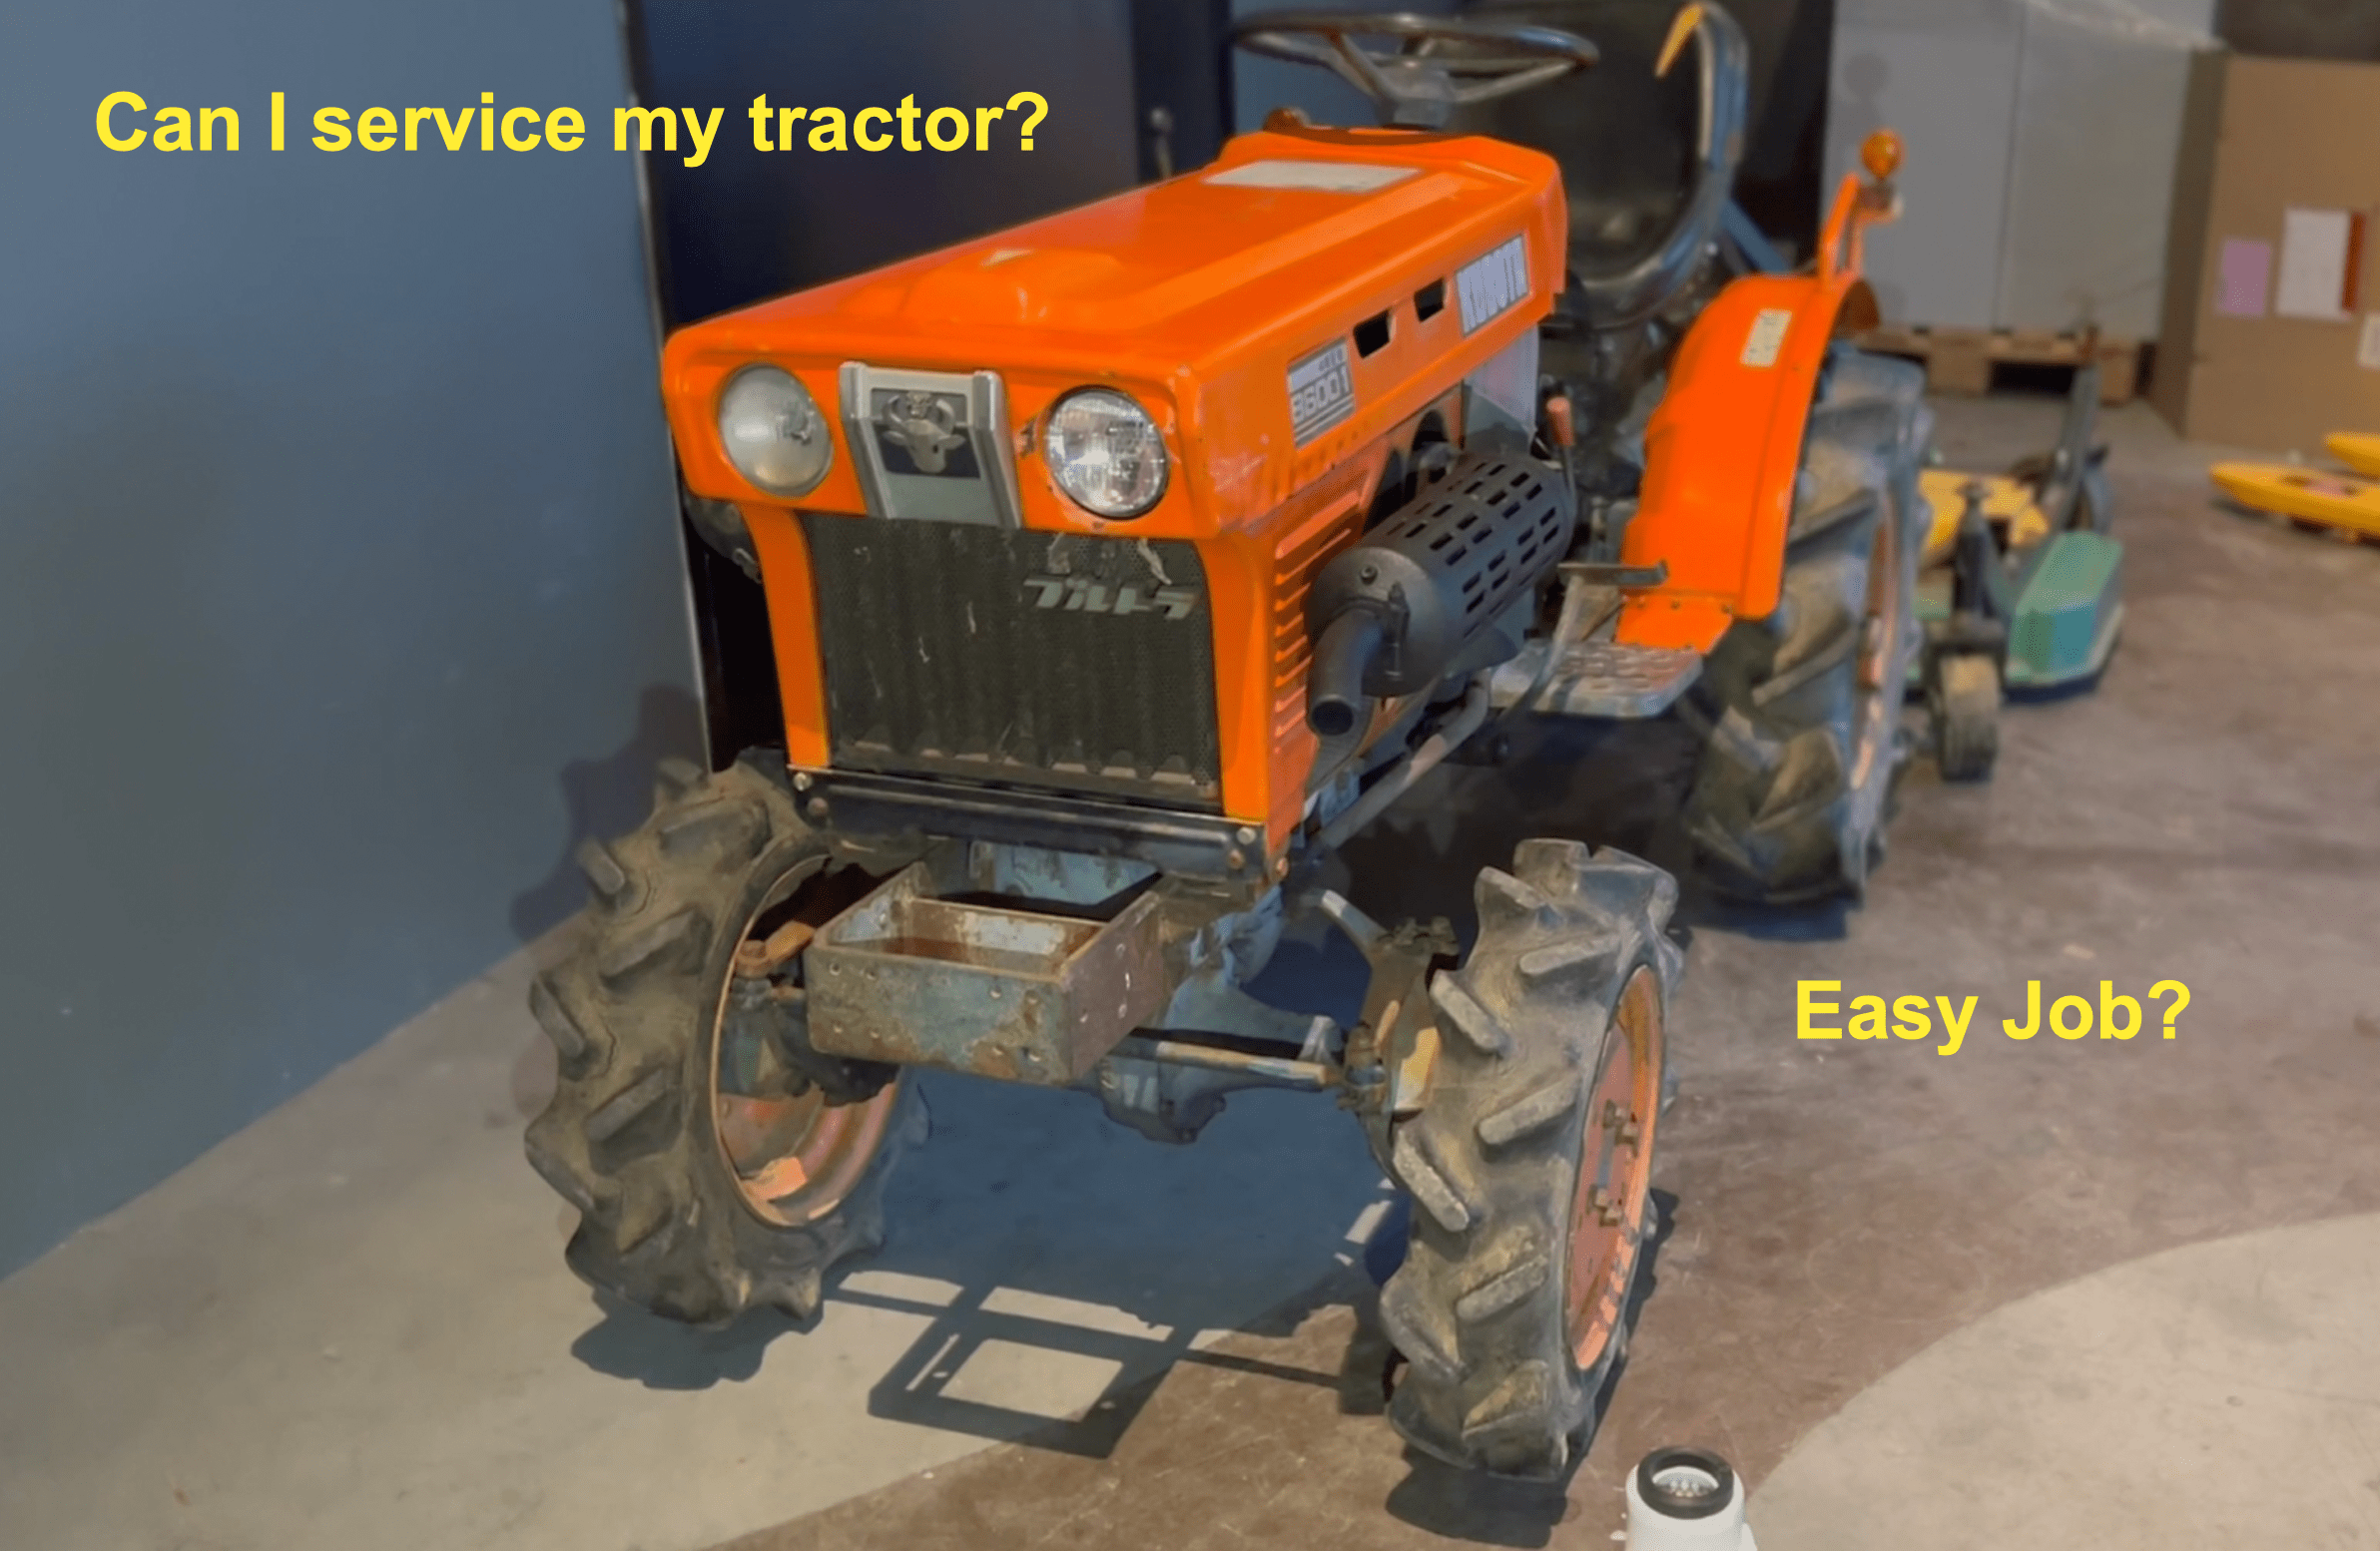 Changer soi-même les filtres de son mini-tracteur – C’est facile ?